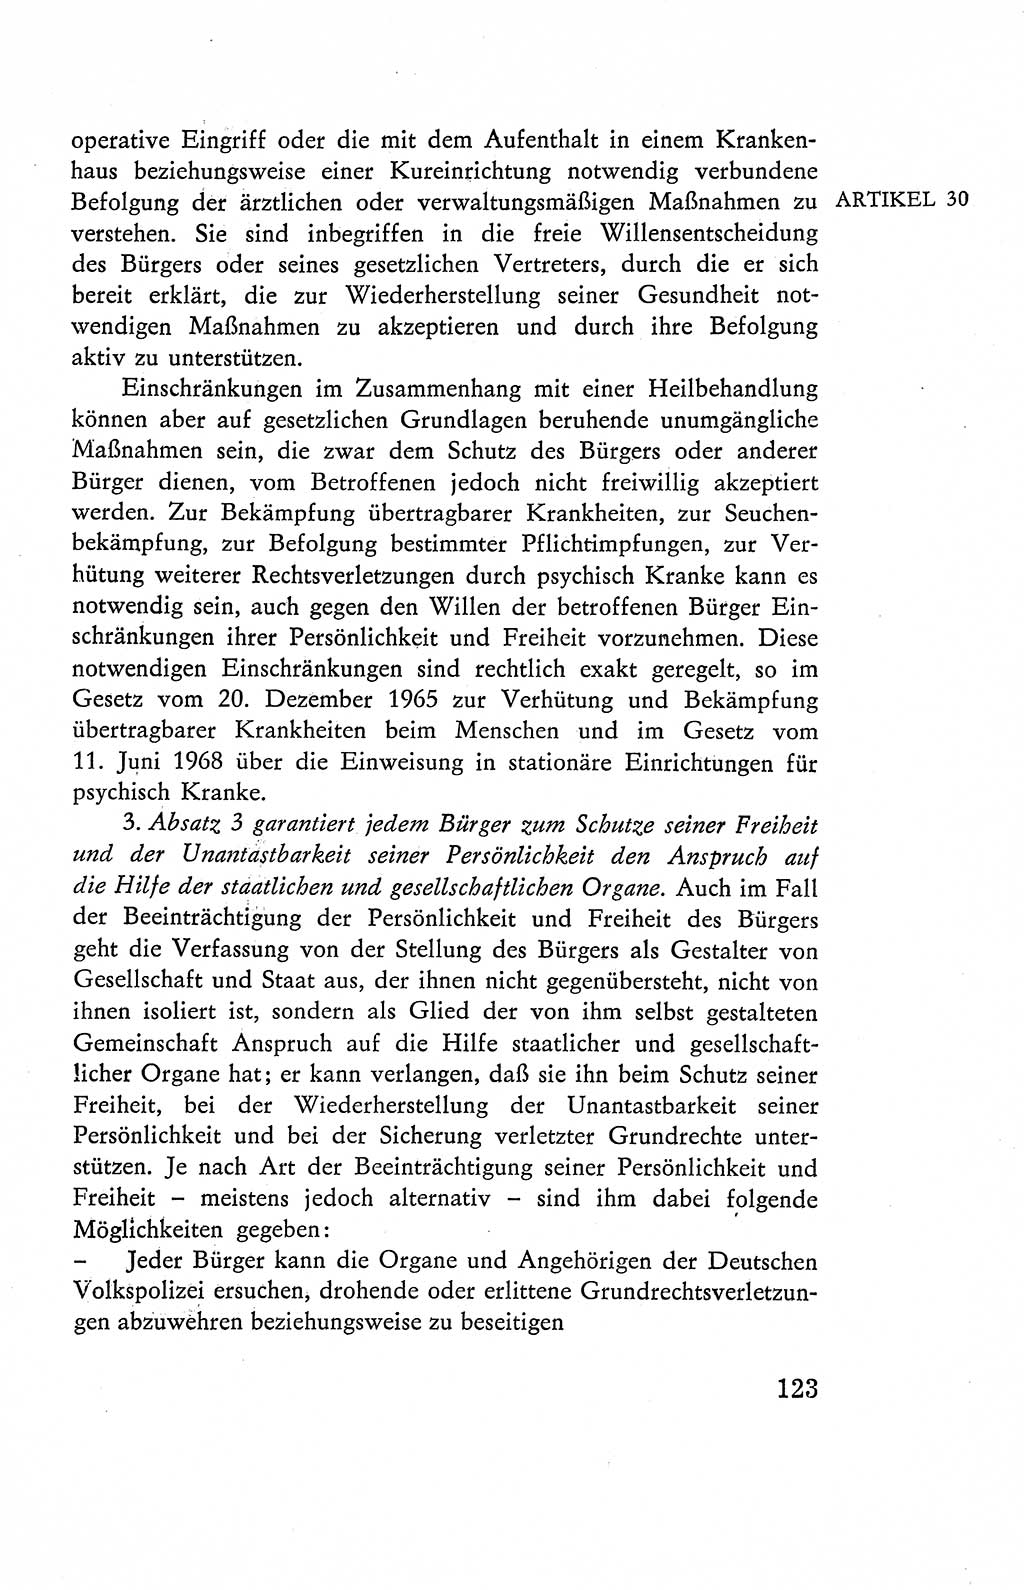 Verfassung der Deutschen Demokratischen Republik (DDR), Dokumente, Kommentar 1969, Band 2, Seite 123 (Verf. DDR Dok. Komm. 1969, Bd. 2, S. 123)